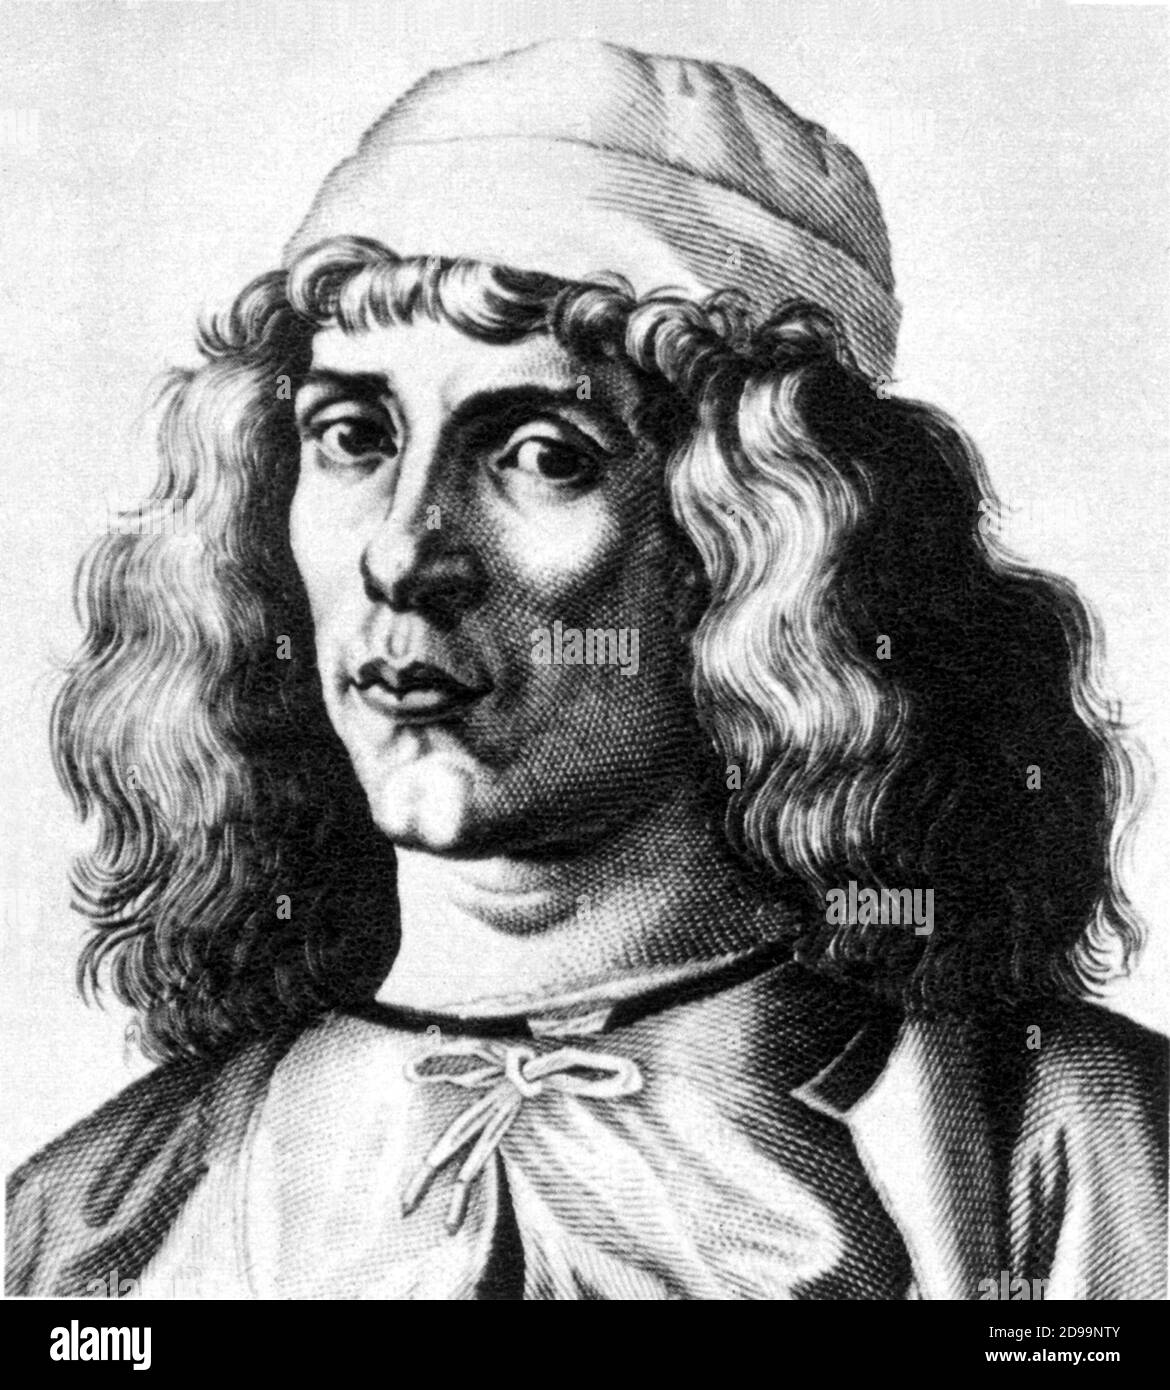 GIOVANNI  PICO  DELLA  MIRANDOLA  ( Mirandola 1463 - Firenze 1494 ) italian philosopher , celebrated for his prodigious memory - RENAISSANCE - RINASCIMENTO - scrittore - writer - FILOSOFO - UMANESIMO - UMANISTA - HUMANISM - HUMANIST - MEMORIA -  portrait - ritratto - long hair man - cappello - hat - GAY  ---- Archivio GBB Stock Photo